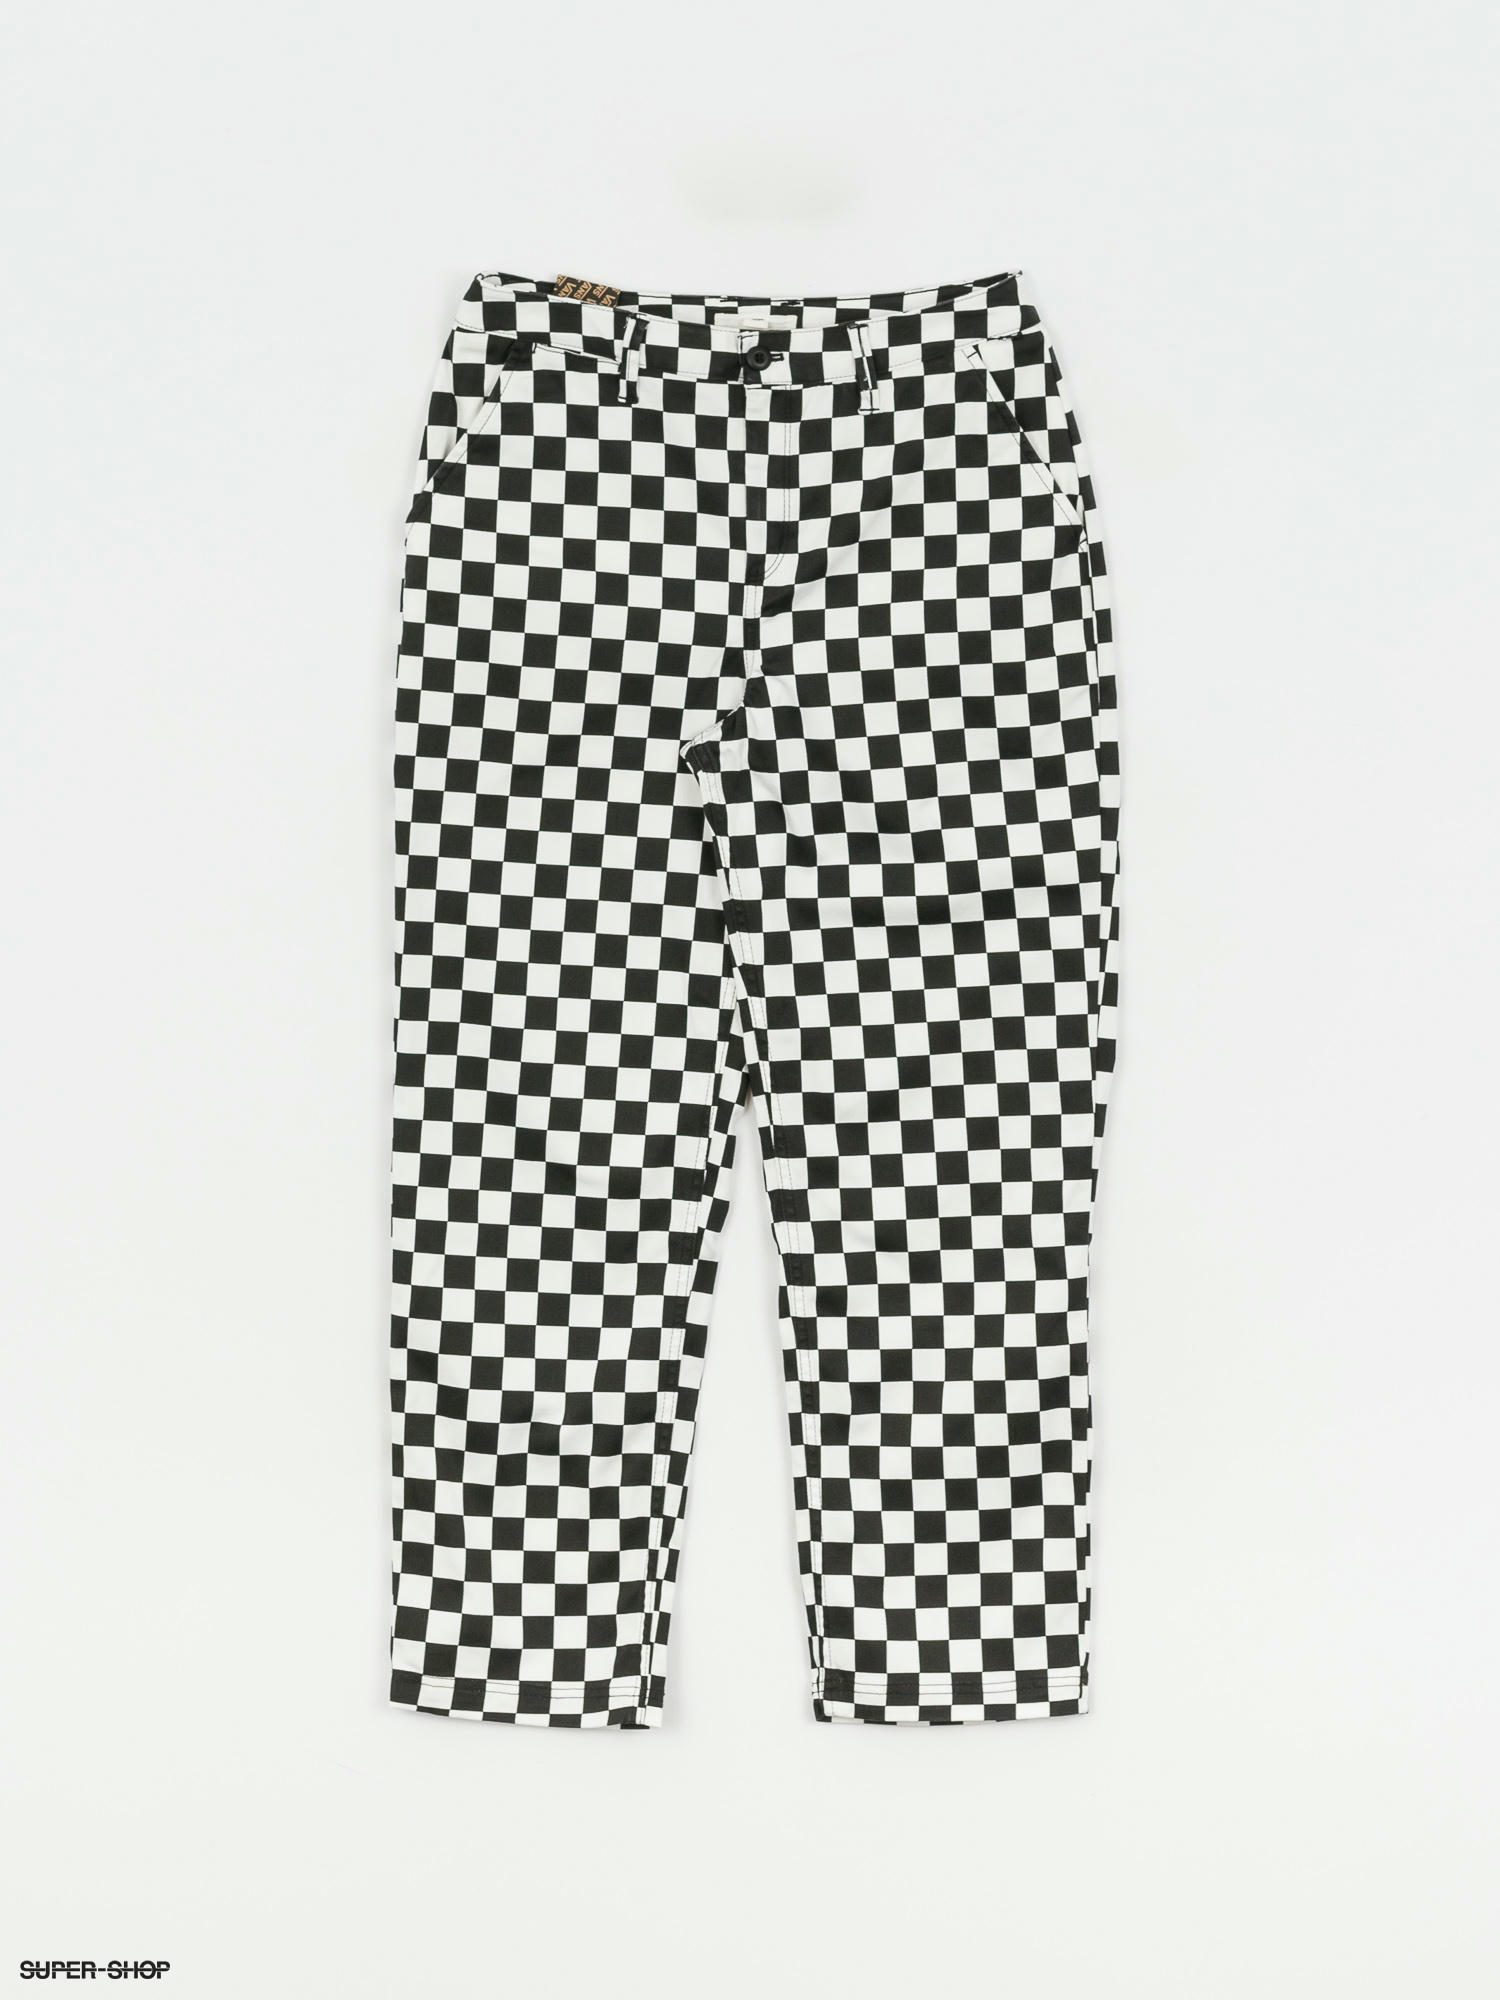 vans checkered shorts